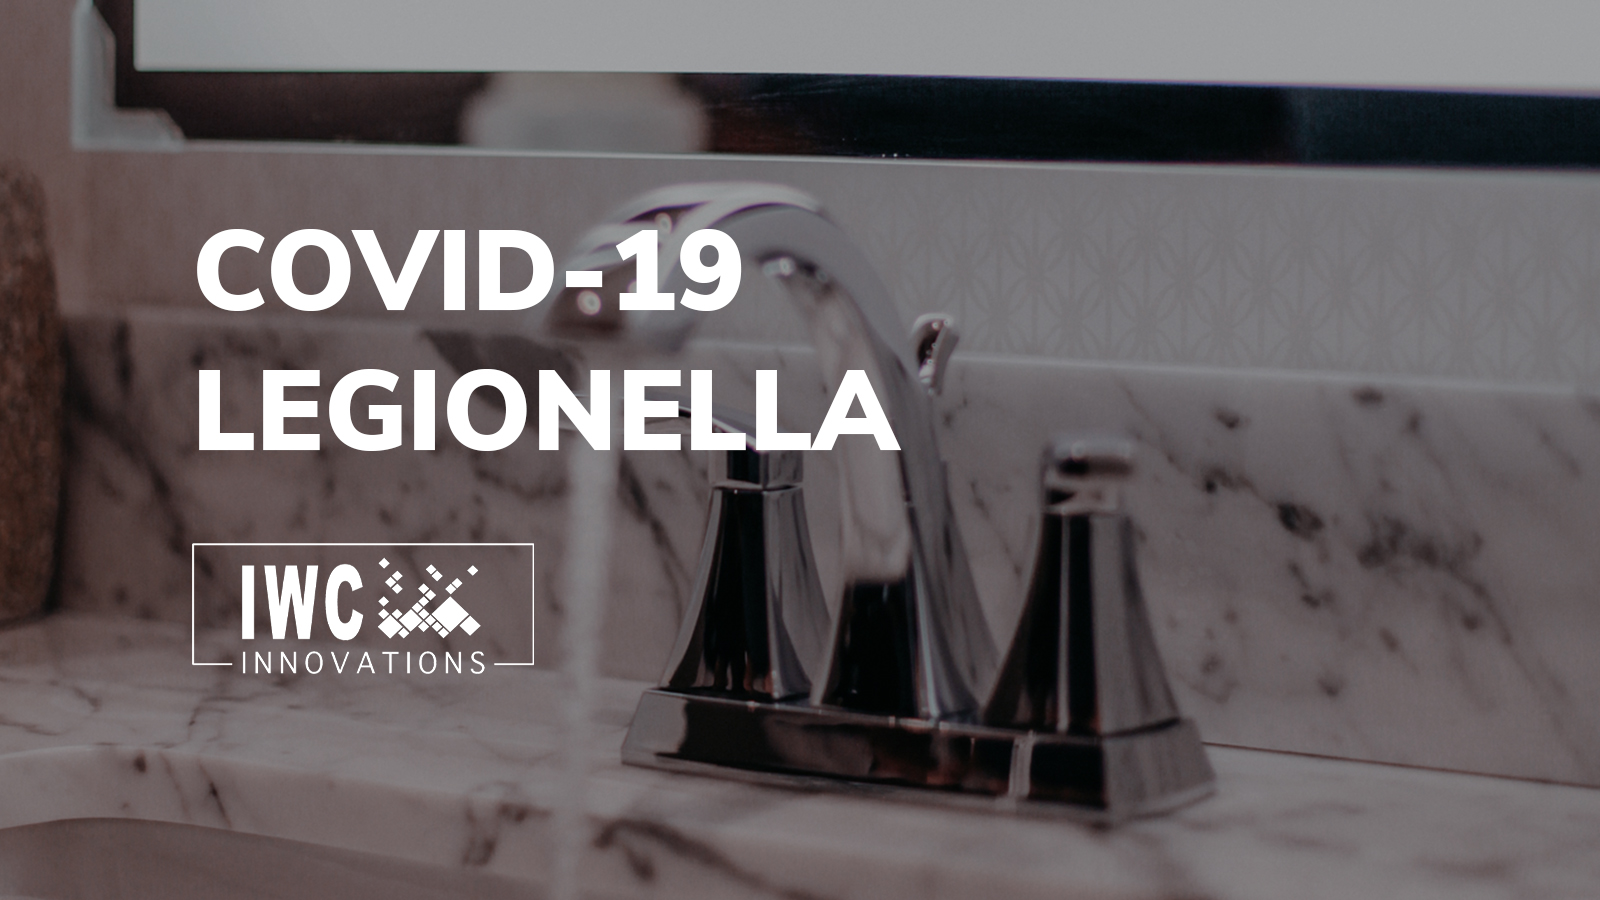 Covid-19 and Legionella